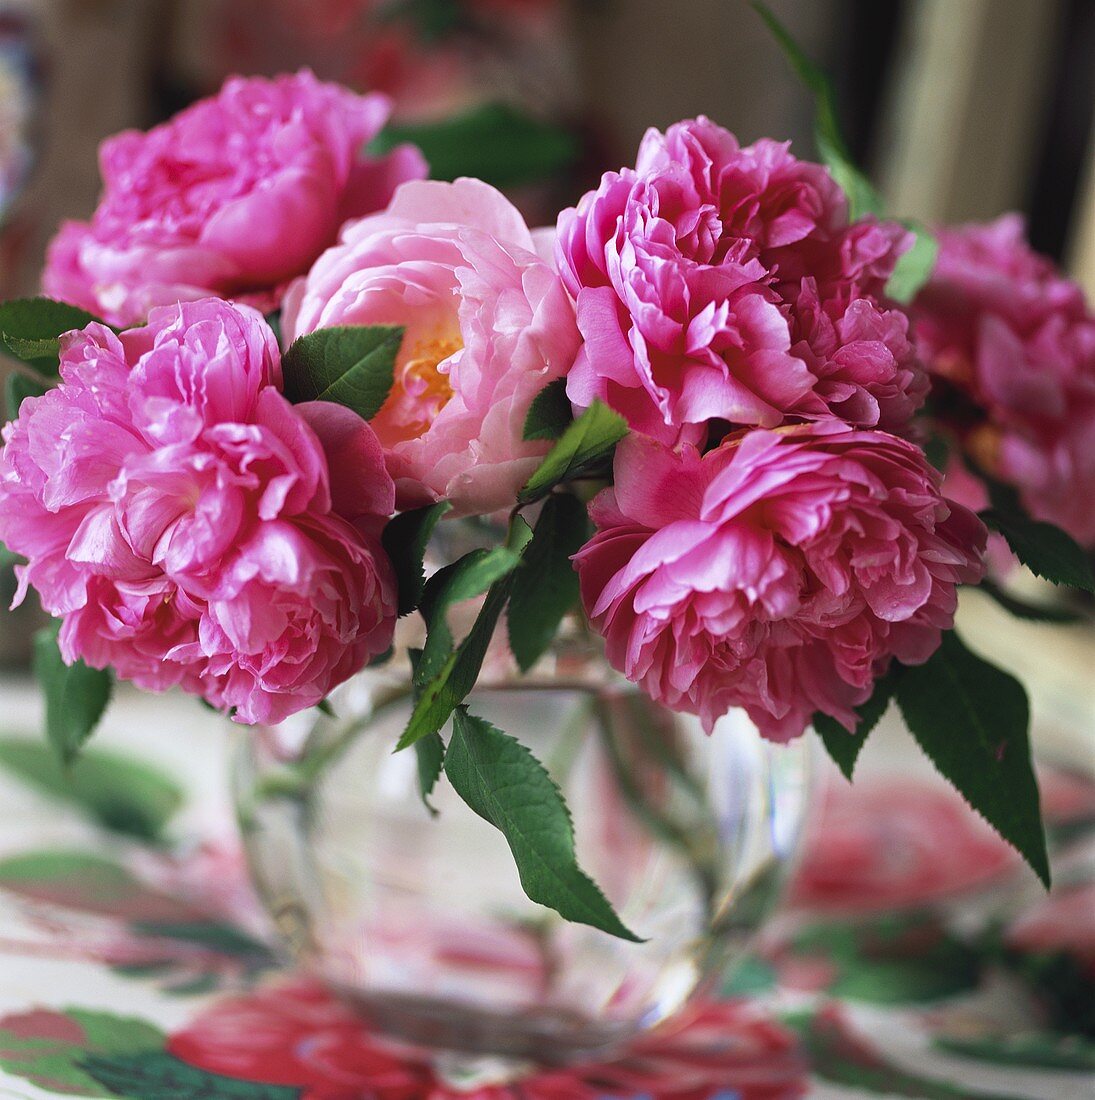 Pink peonies in round vase